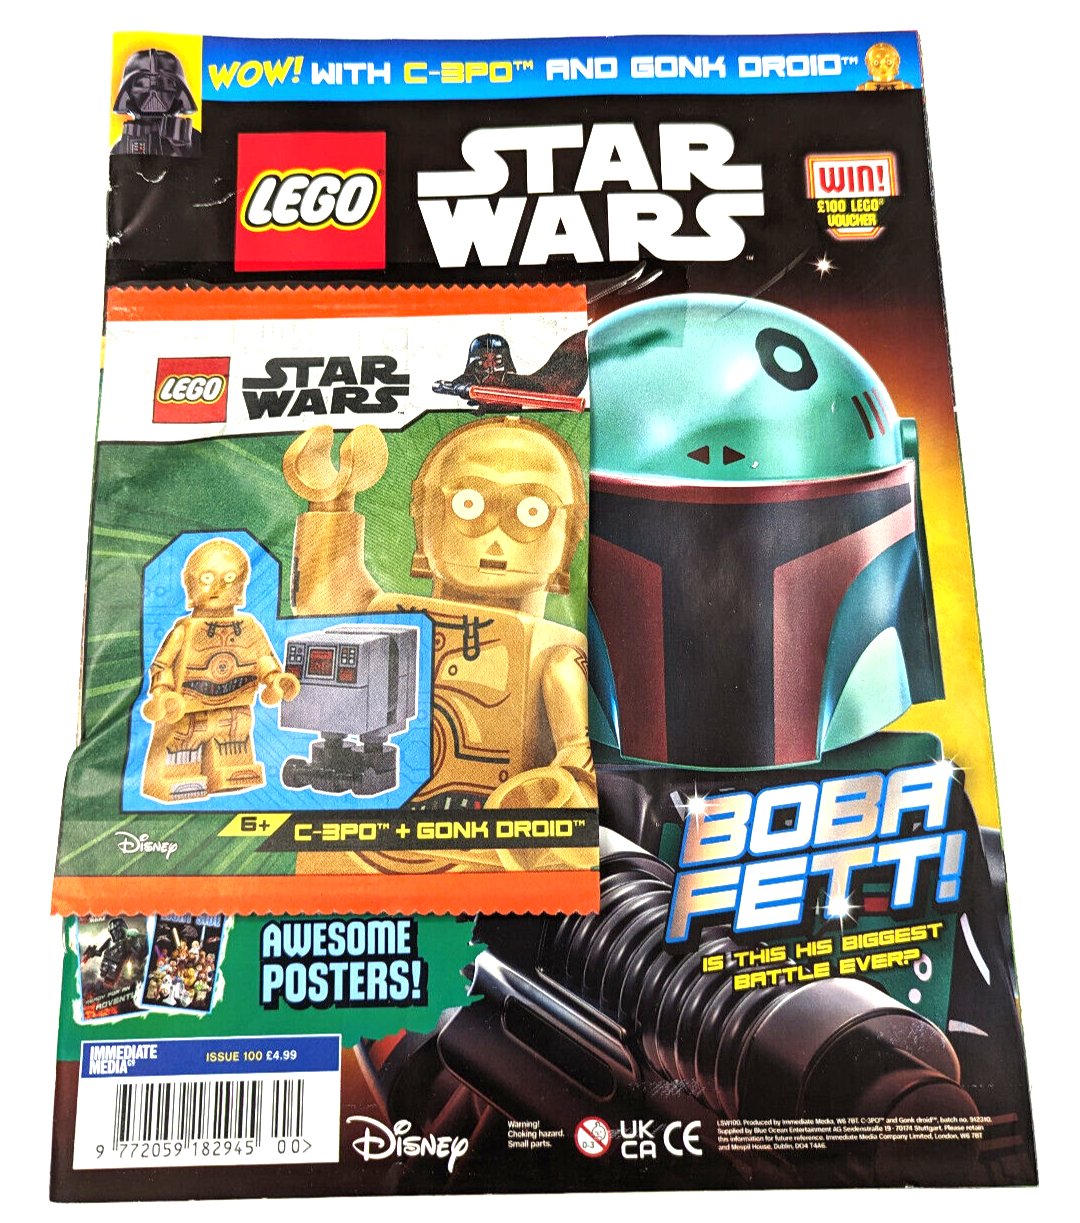 New Lego Star Wars Magazine Boba Fett - Set 912310 with C-3PM & Gonk Groid